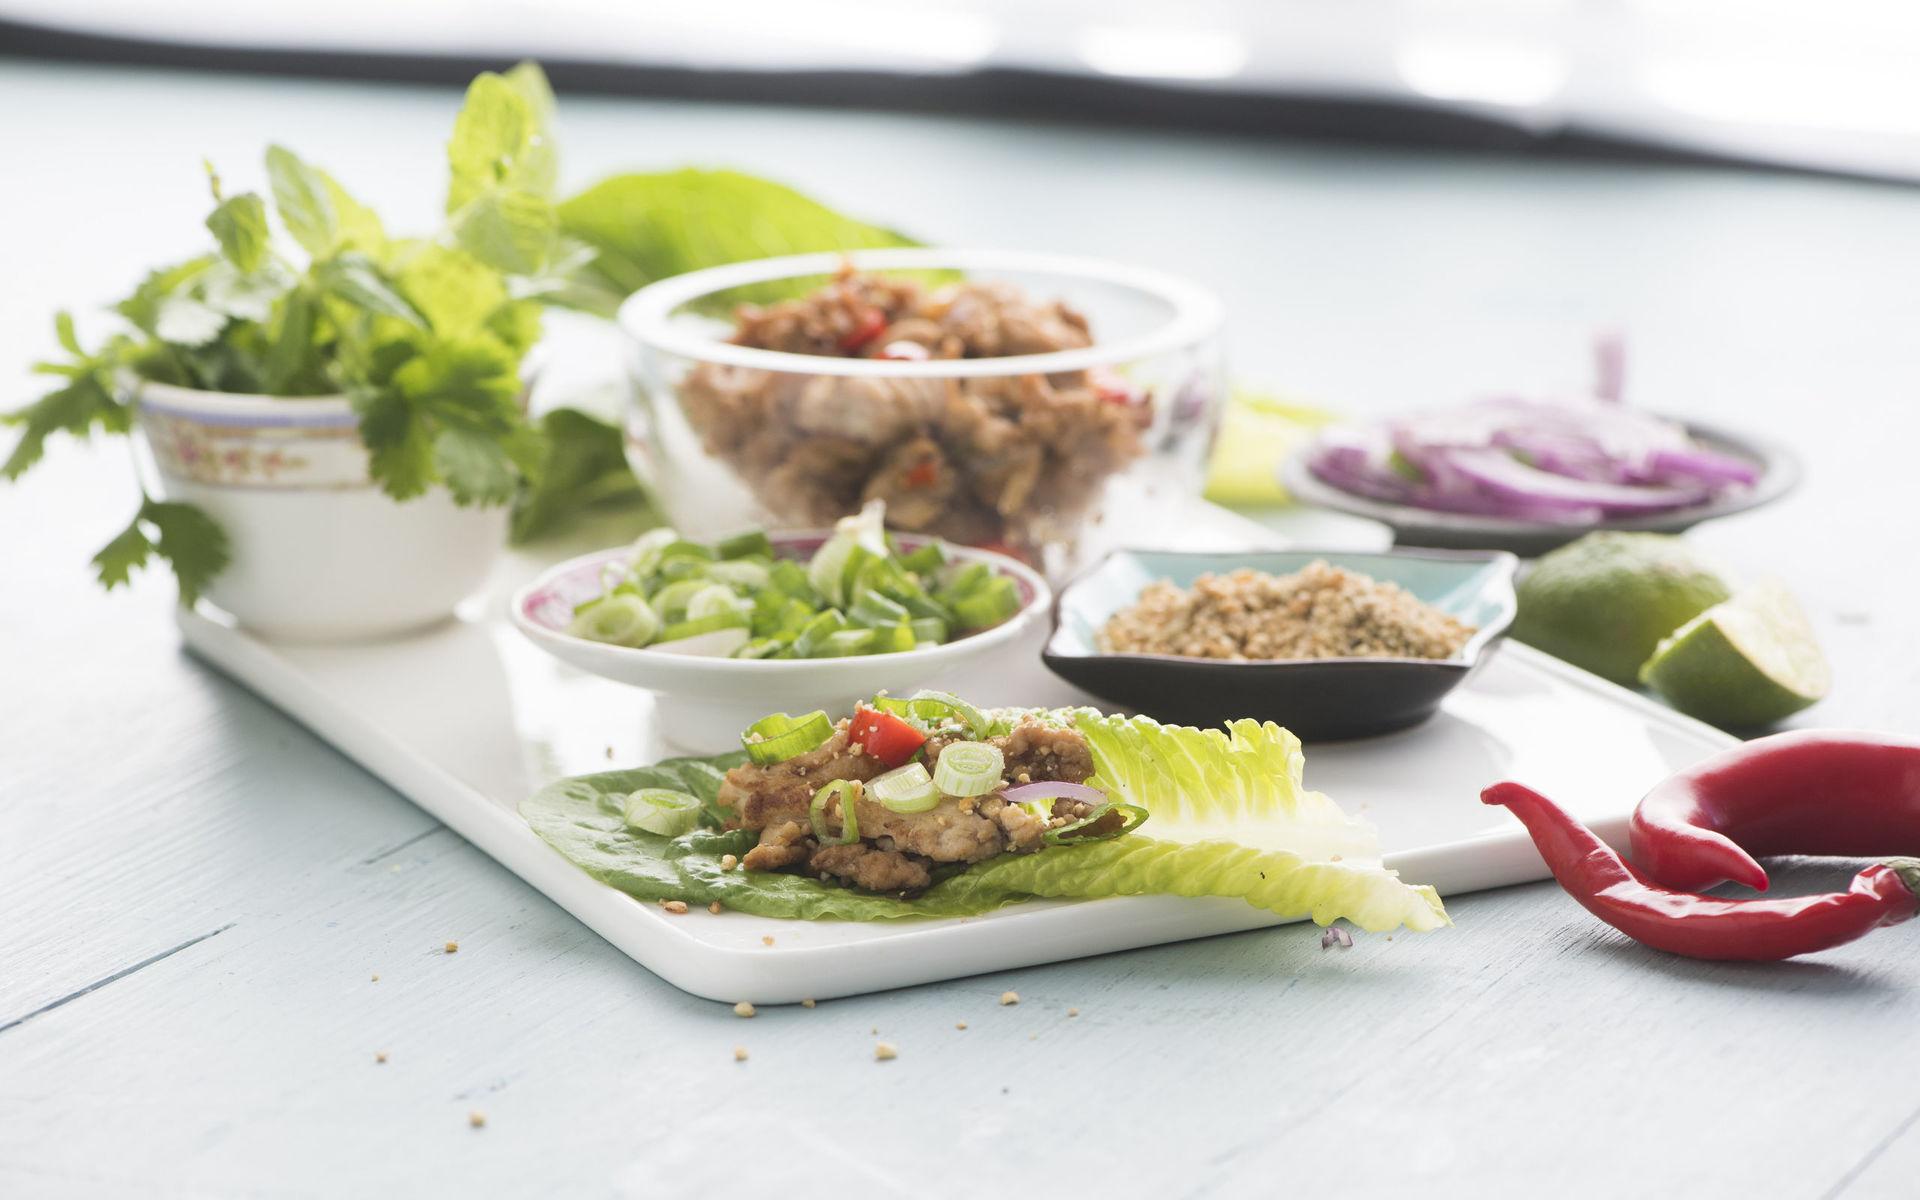  Larb är en thailändsk sallad bestående av färs, örter och massor av goda smaker. Äts helst i salladsblad.